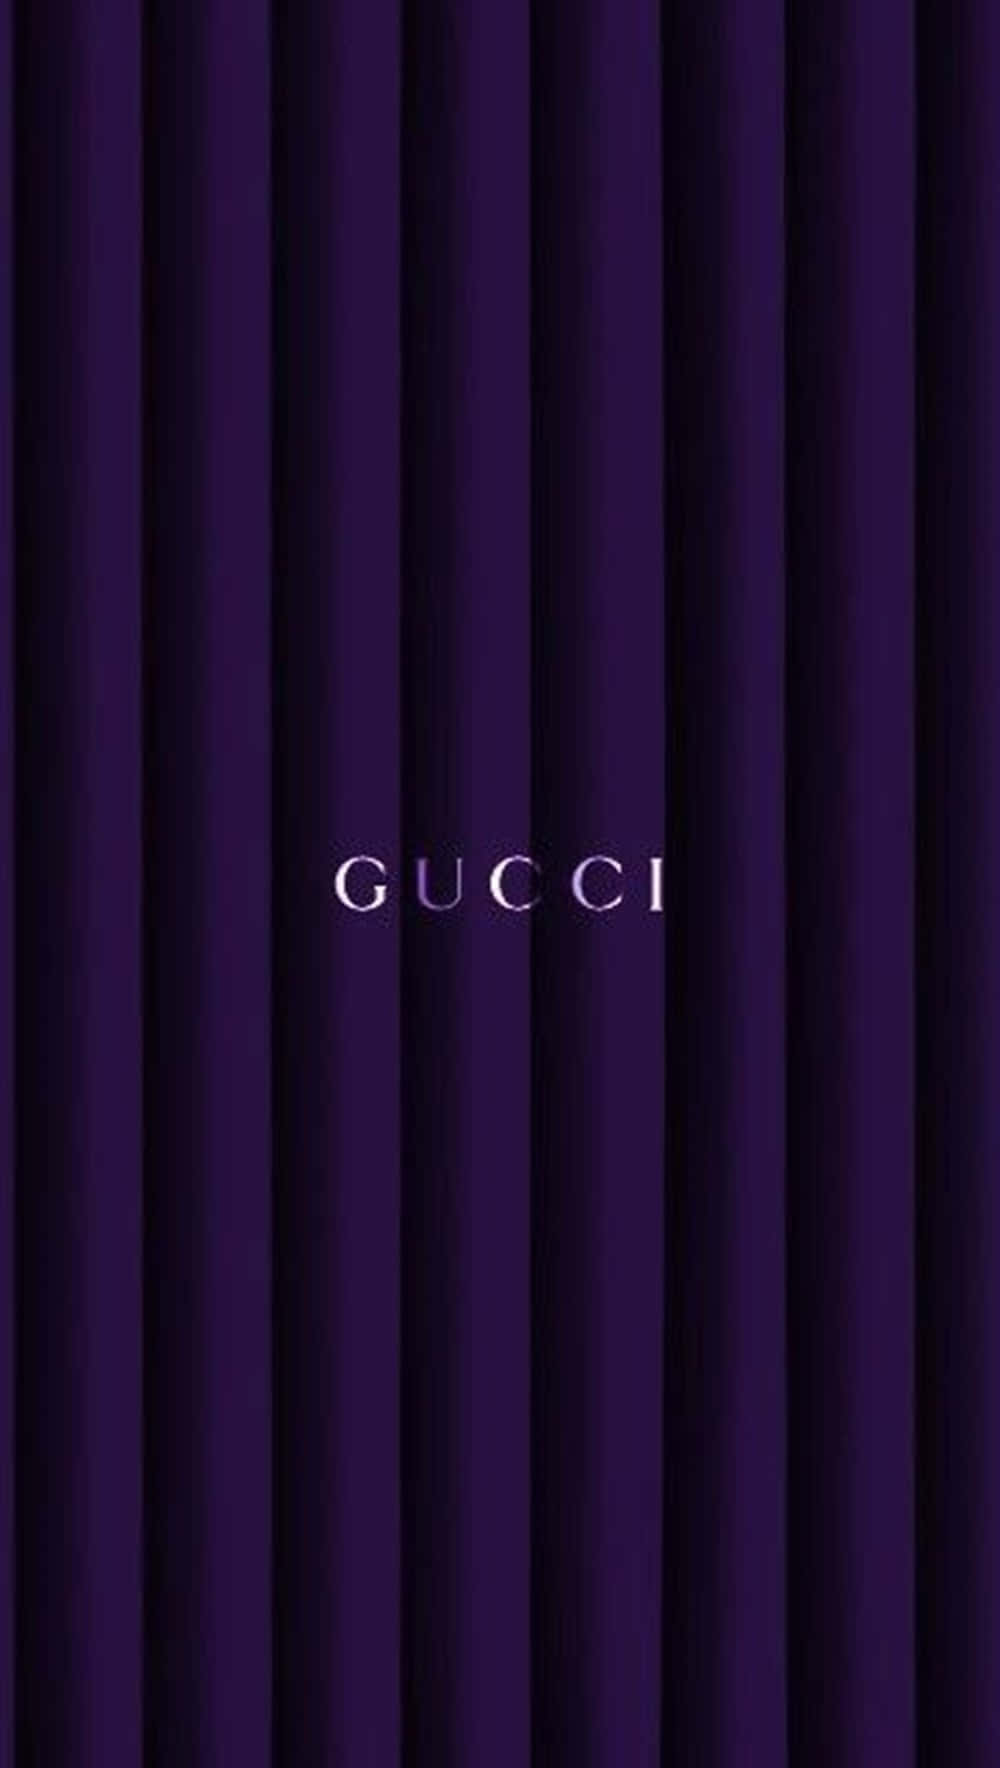 Gucci Xs Max Wallpaper  Gucci wallpaper iphone, Beautiful wallpapers for  iphone, Monogram wallpaper